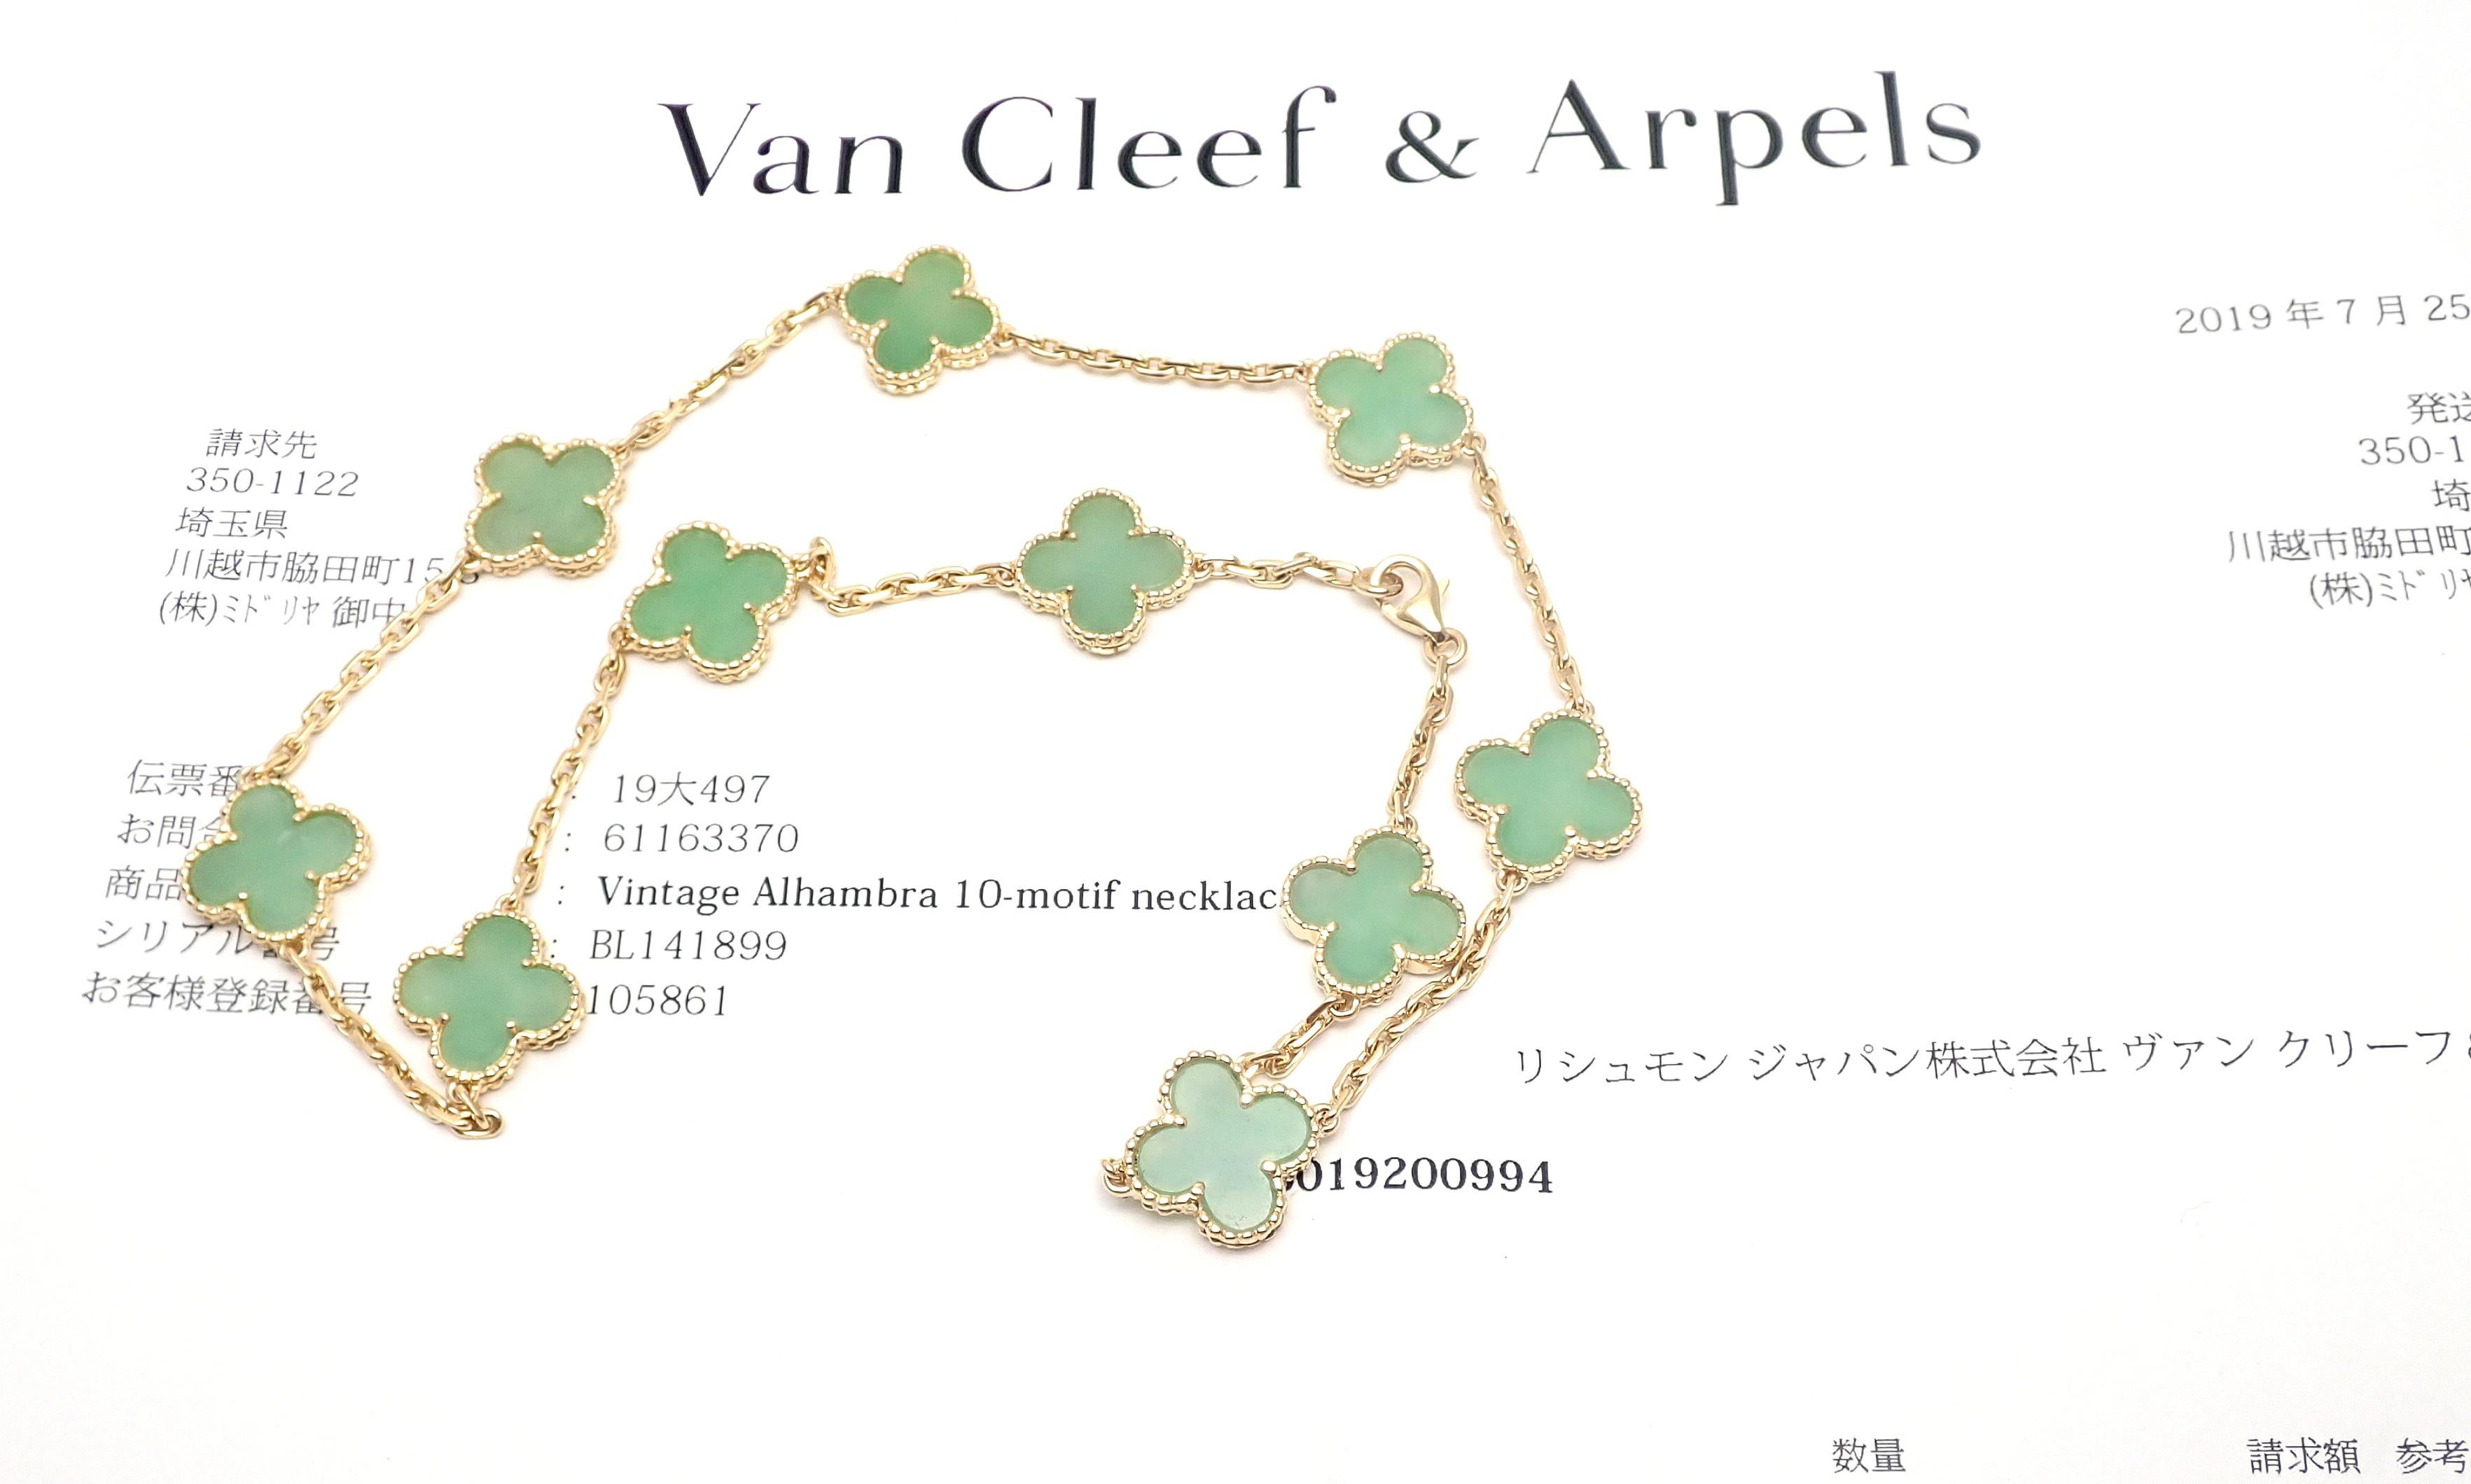 collier de jade Alhambra 10 motifs en or jaune 18k de Van Cleef & Arpels. 
Avec 10 motifs de pierres alhambra en jade de 15 mm chacun
Ce collier est livré avec le papier de service du magasin VCA. 
Détails : 
Longueur : collier de 17''
Largeur :